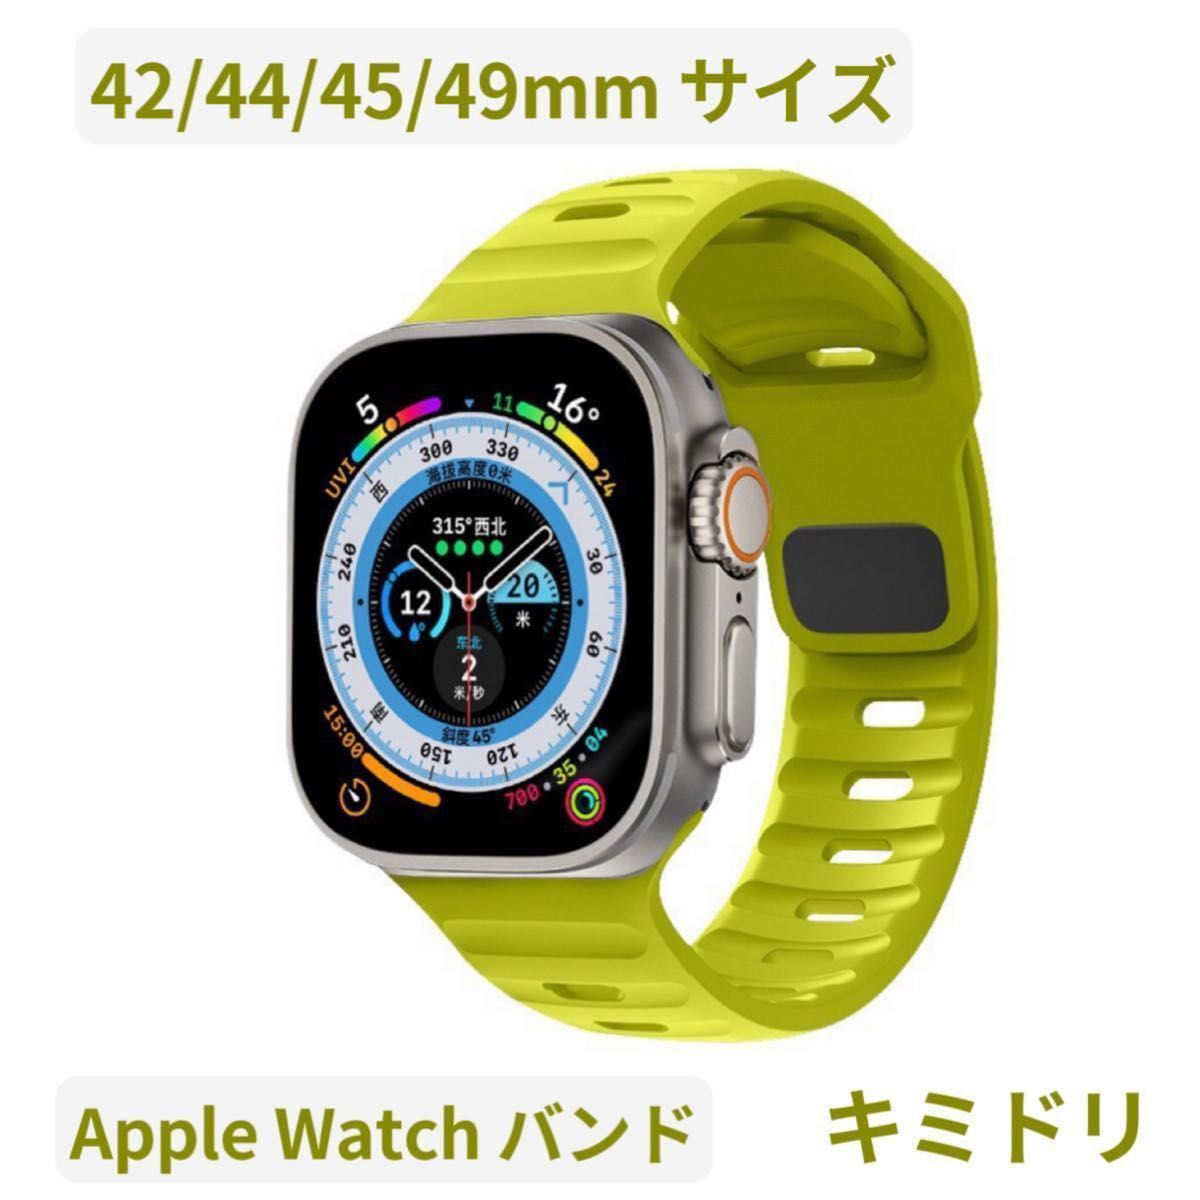 Apple watch band アップルウォッチバンド スポーツバンド 最新 人気 オシャレ ラバーベルト キミドリ